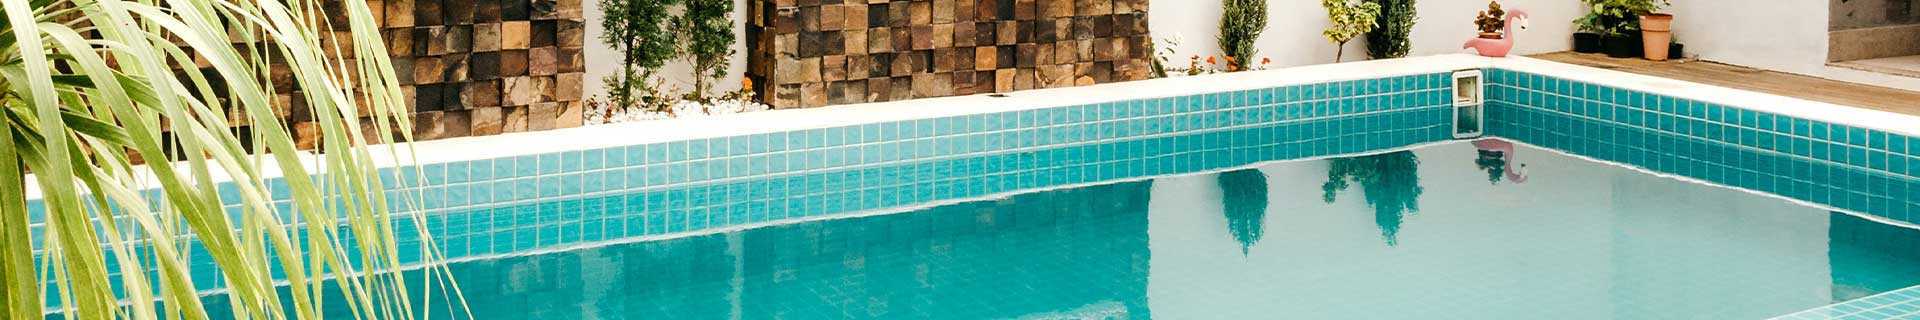 Protection pour piscine et bassin | Direct Filet